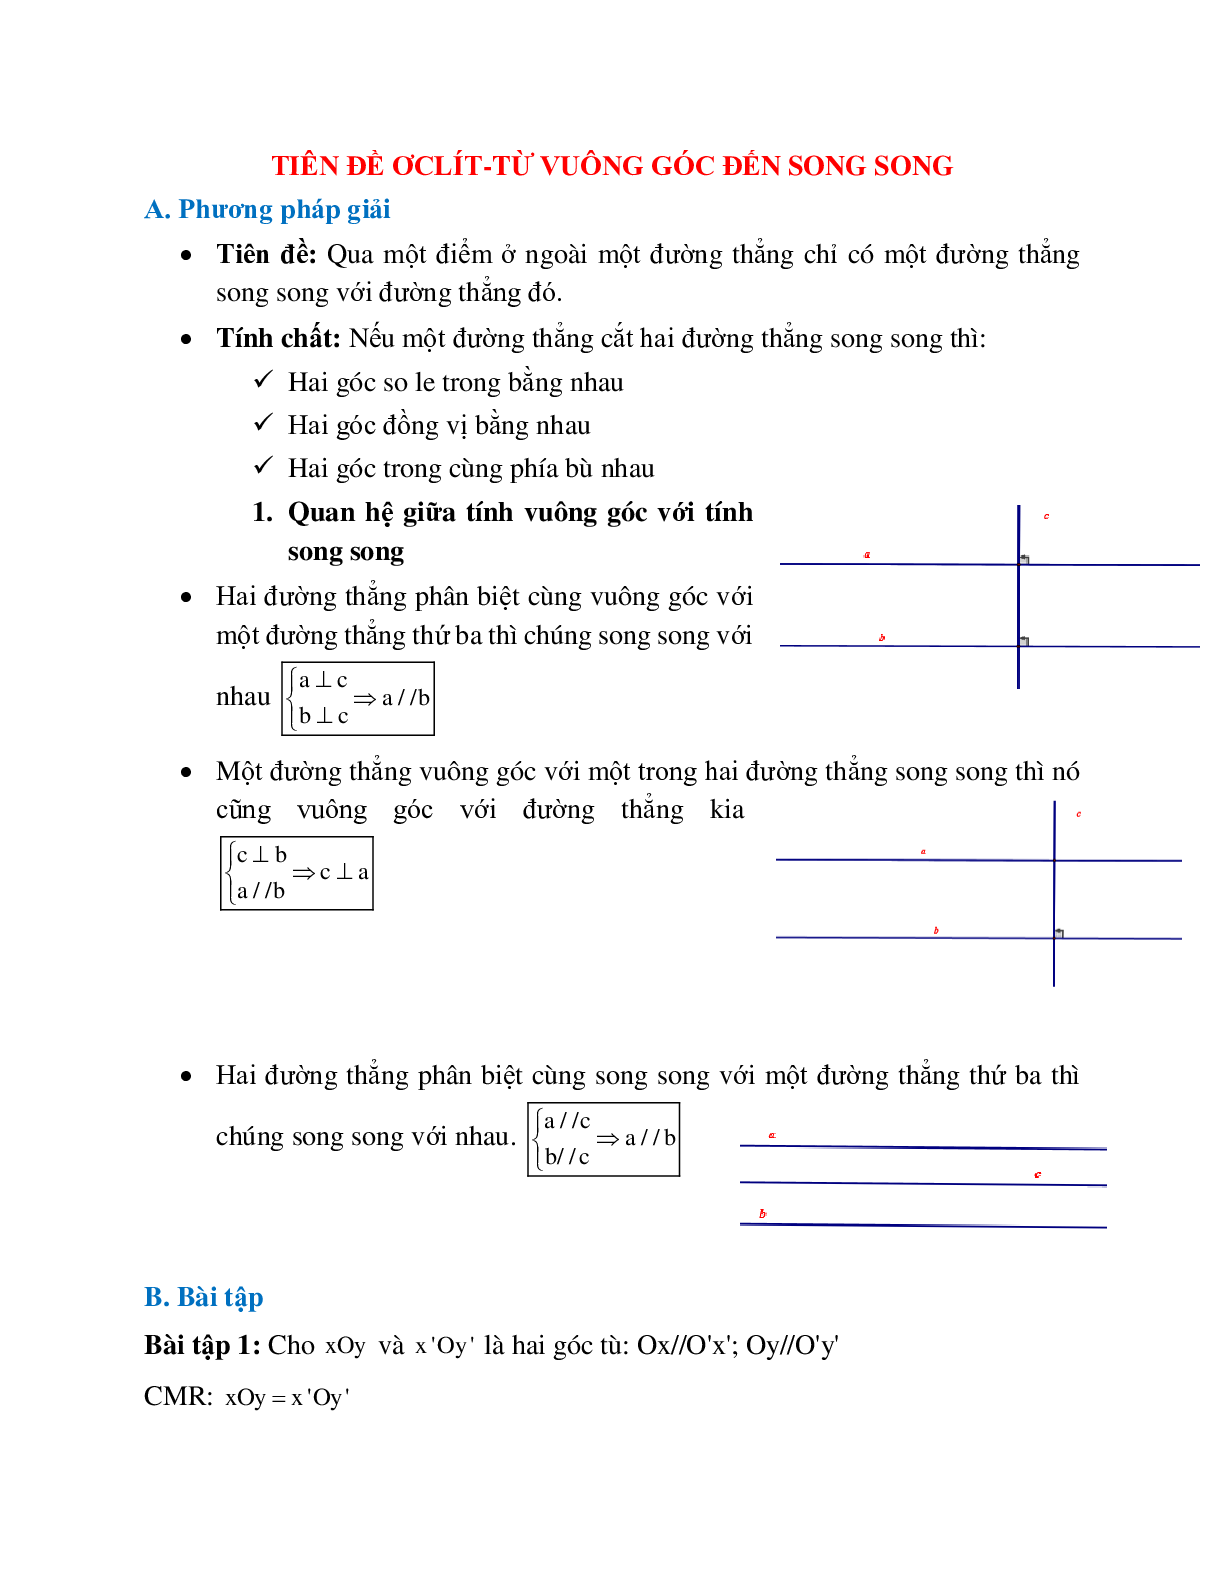 Hệ thống bài tập về Tiên đề Ơ-clit - Từ vuông góc đến song song có lời giải (trang 1)